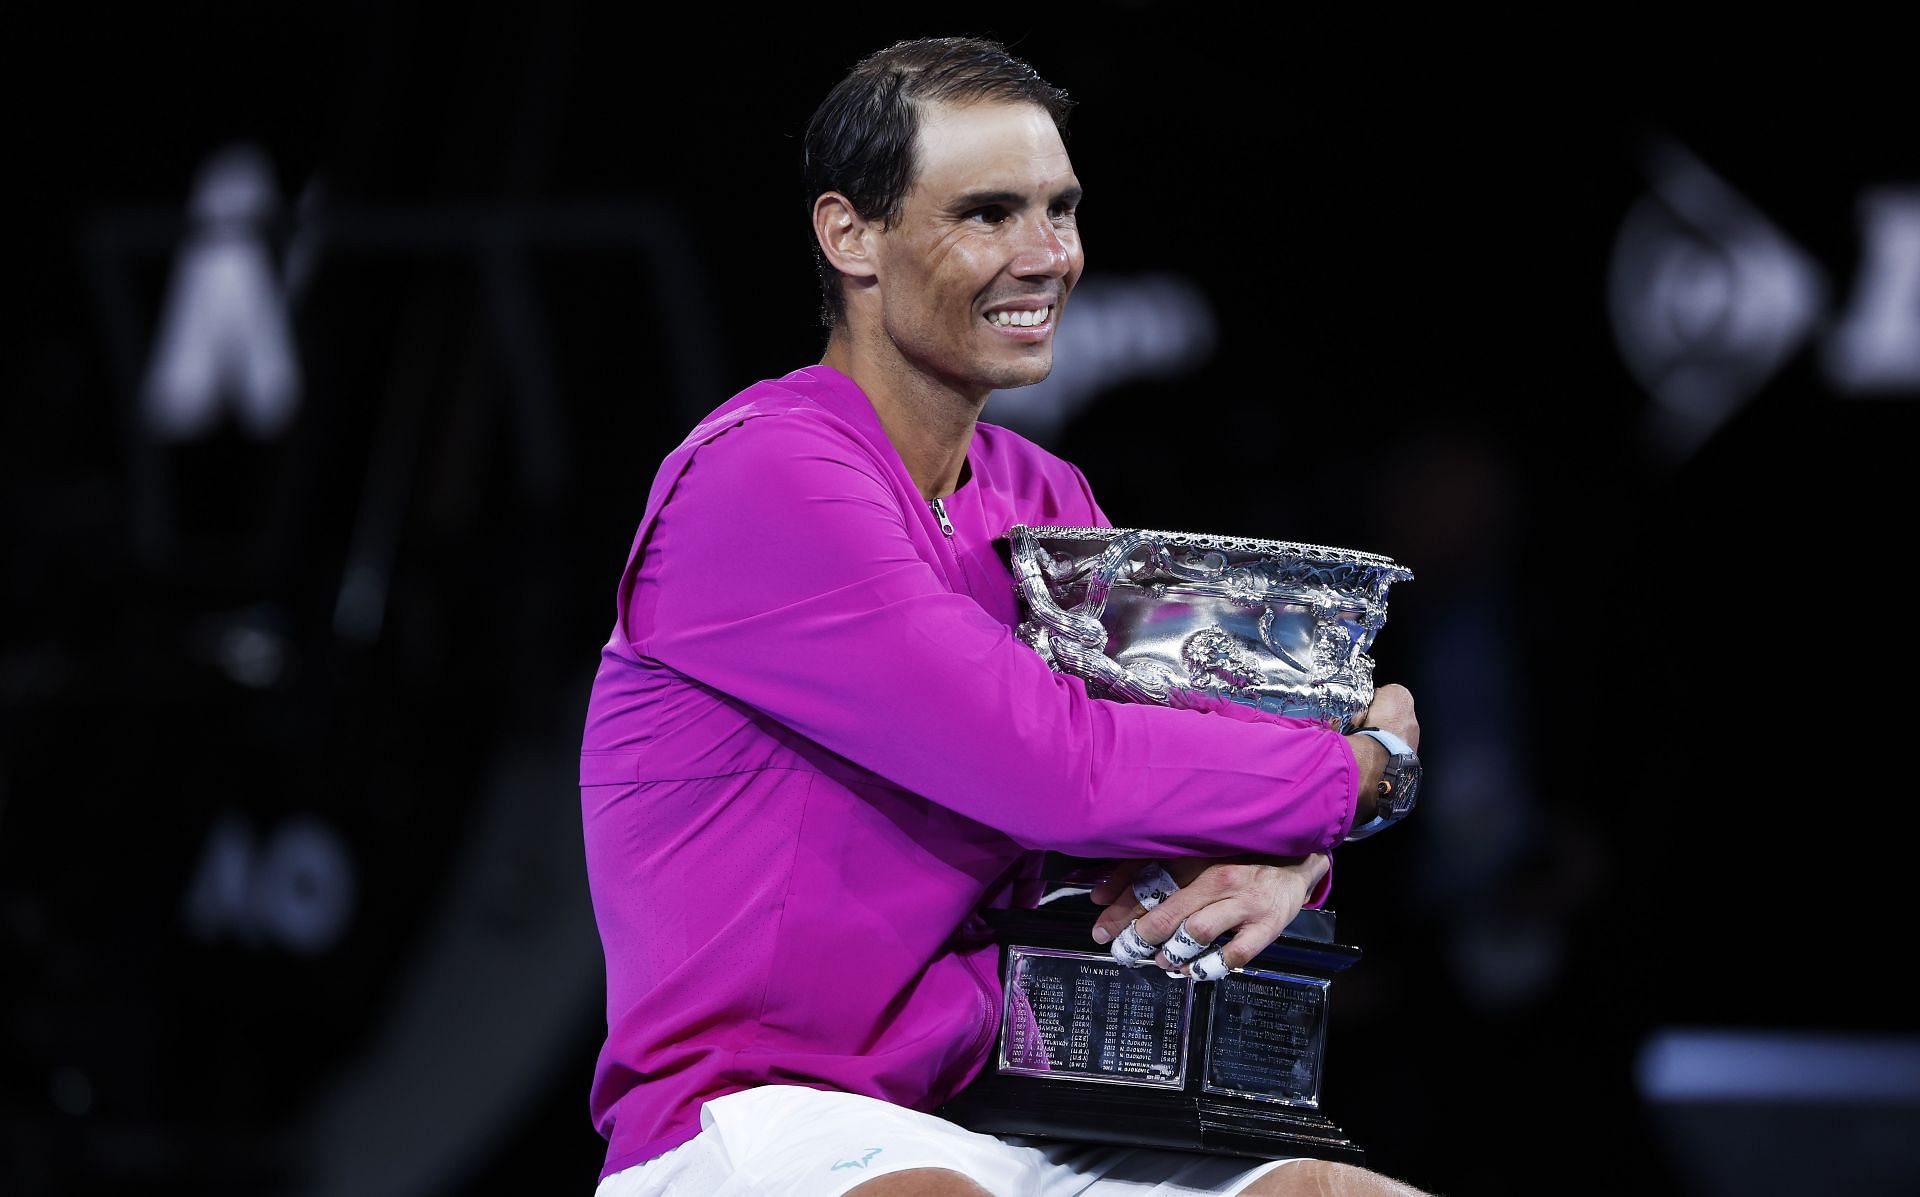 Sponsors react to Rafael Nadal winning 21st Grand Slam at Australian Open